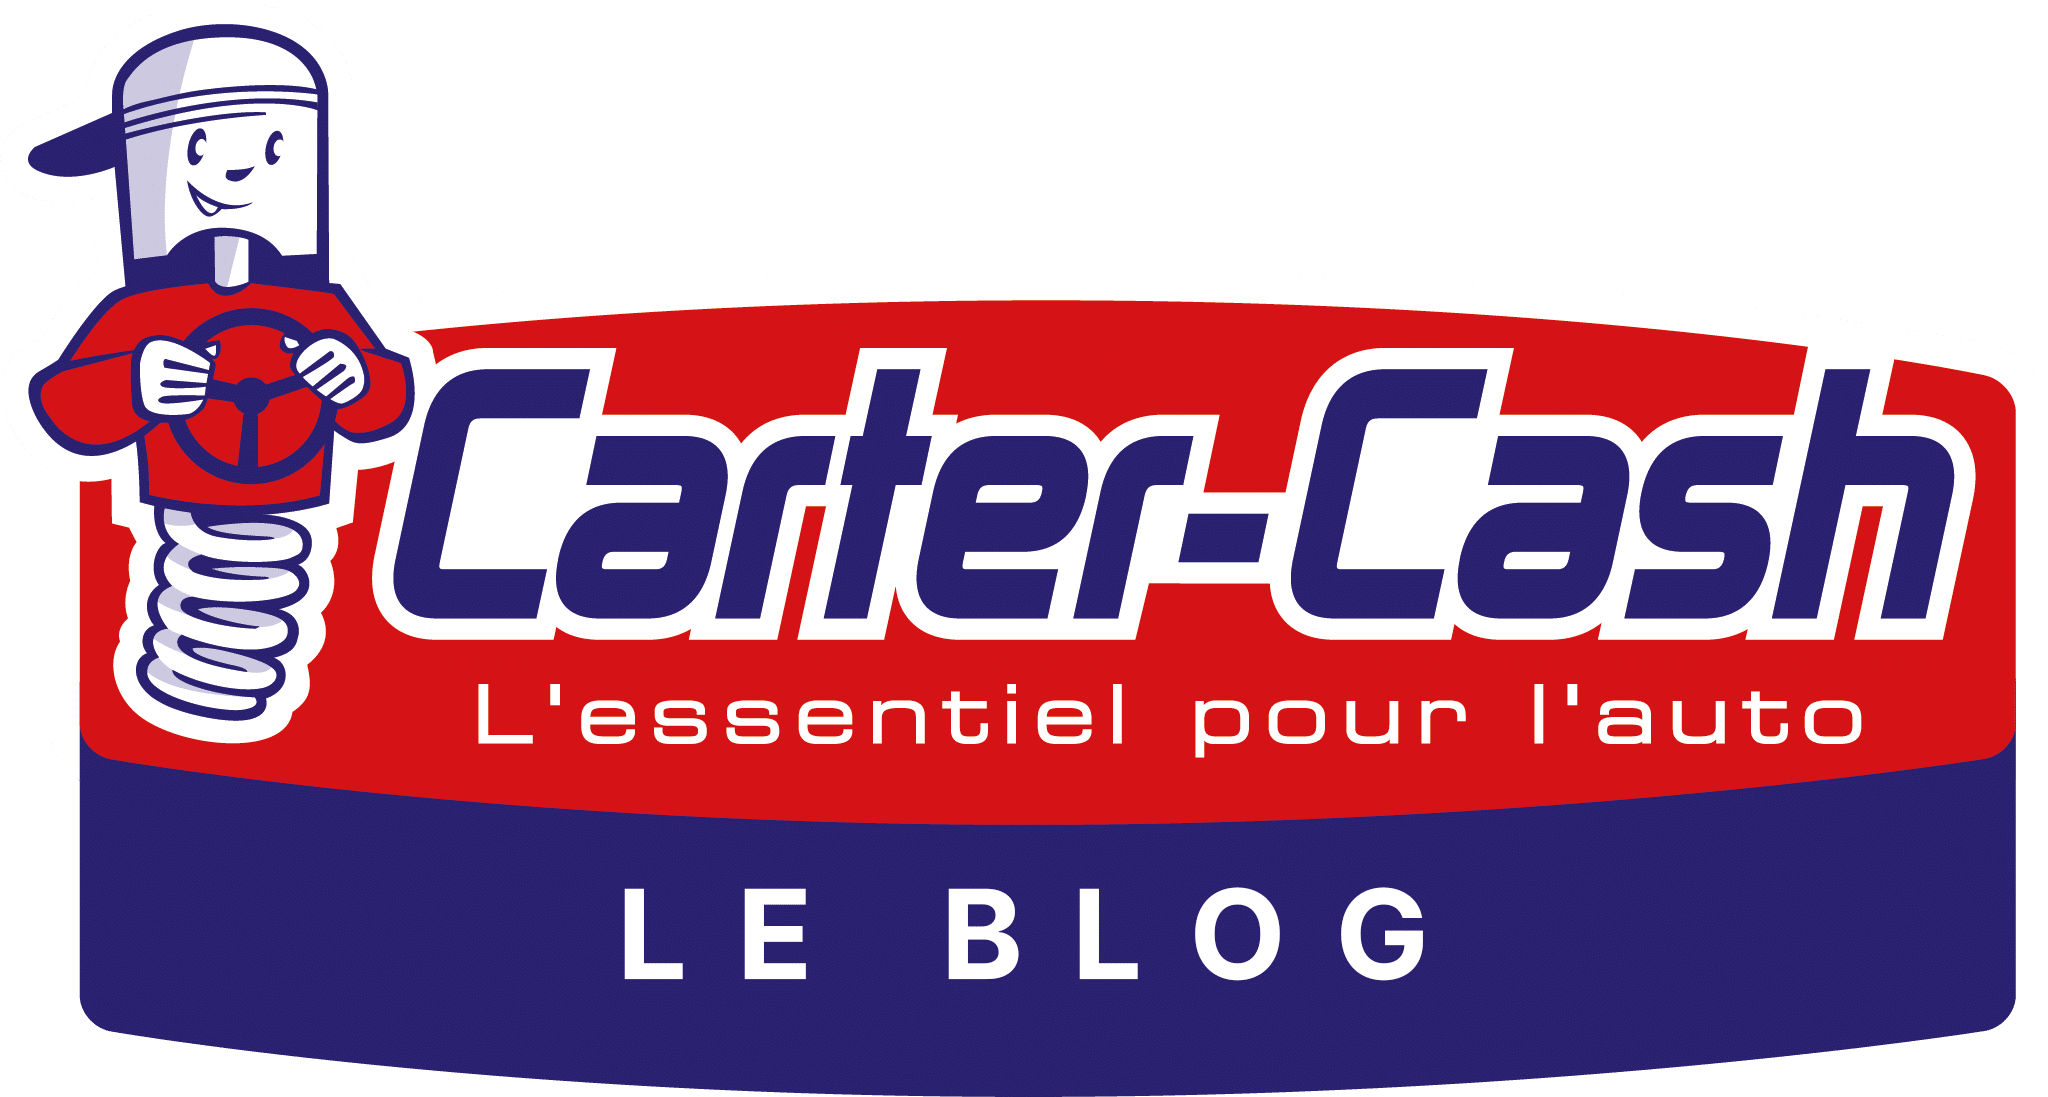 Le Blog de Carter-Cash